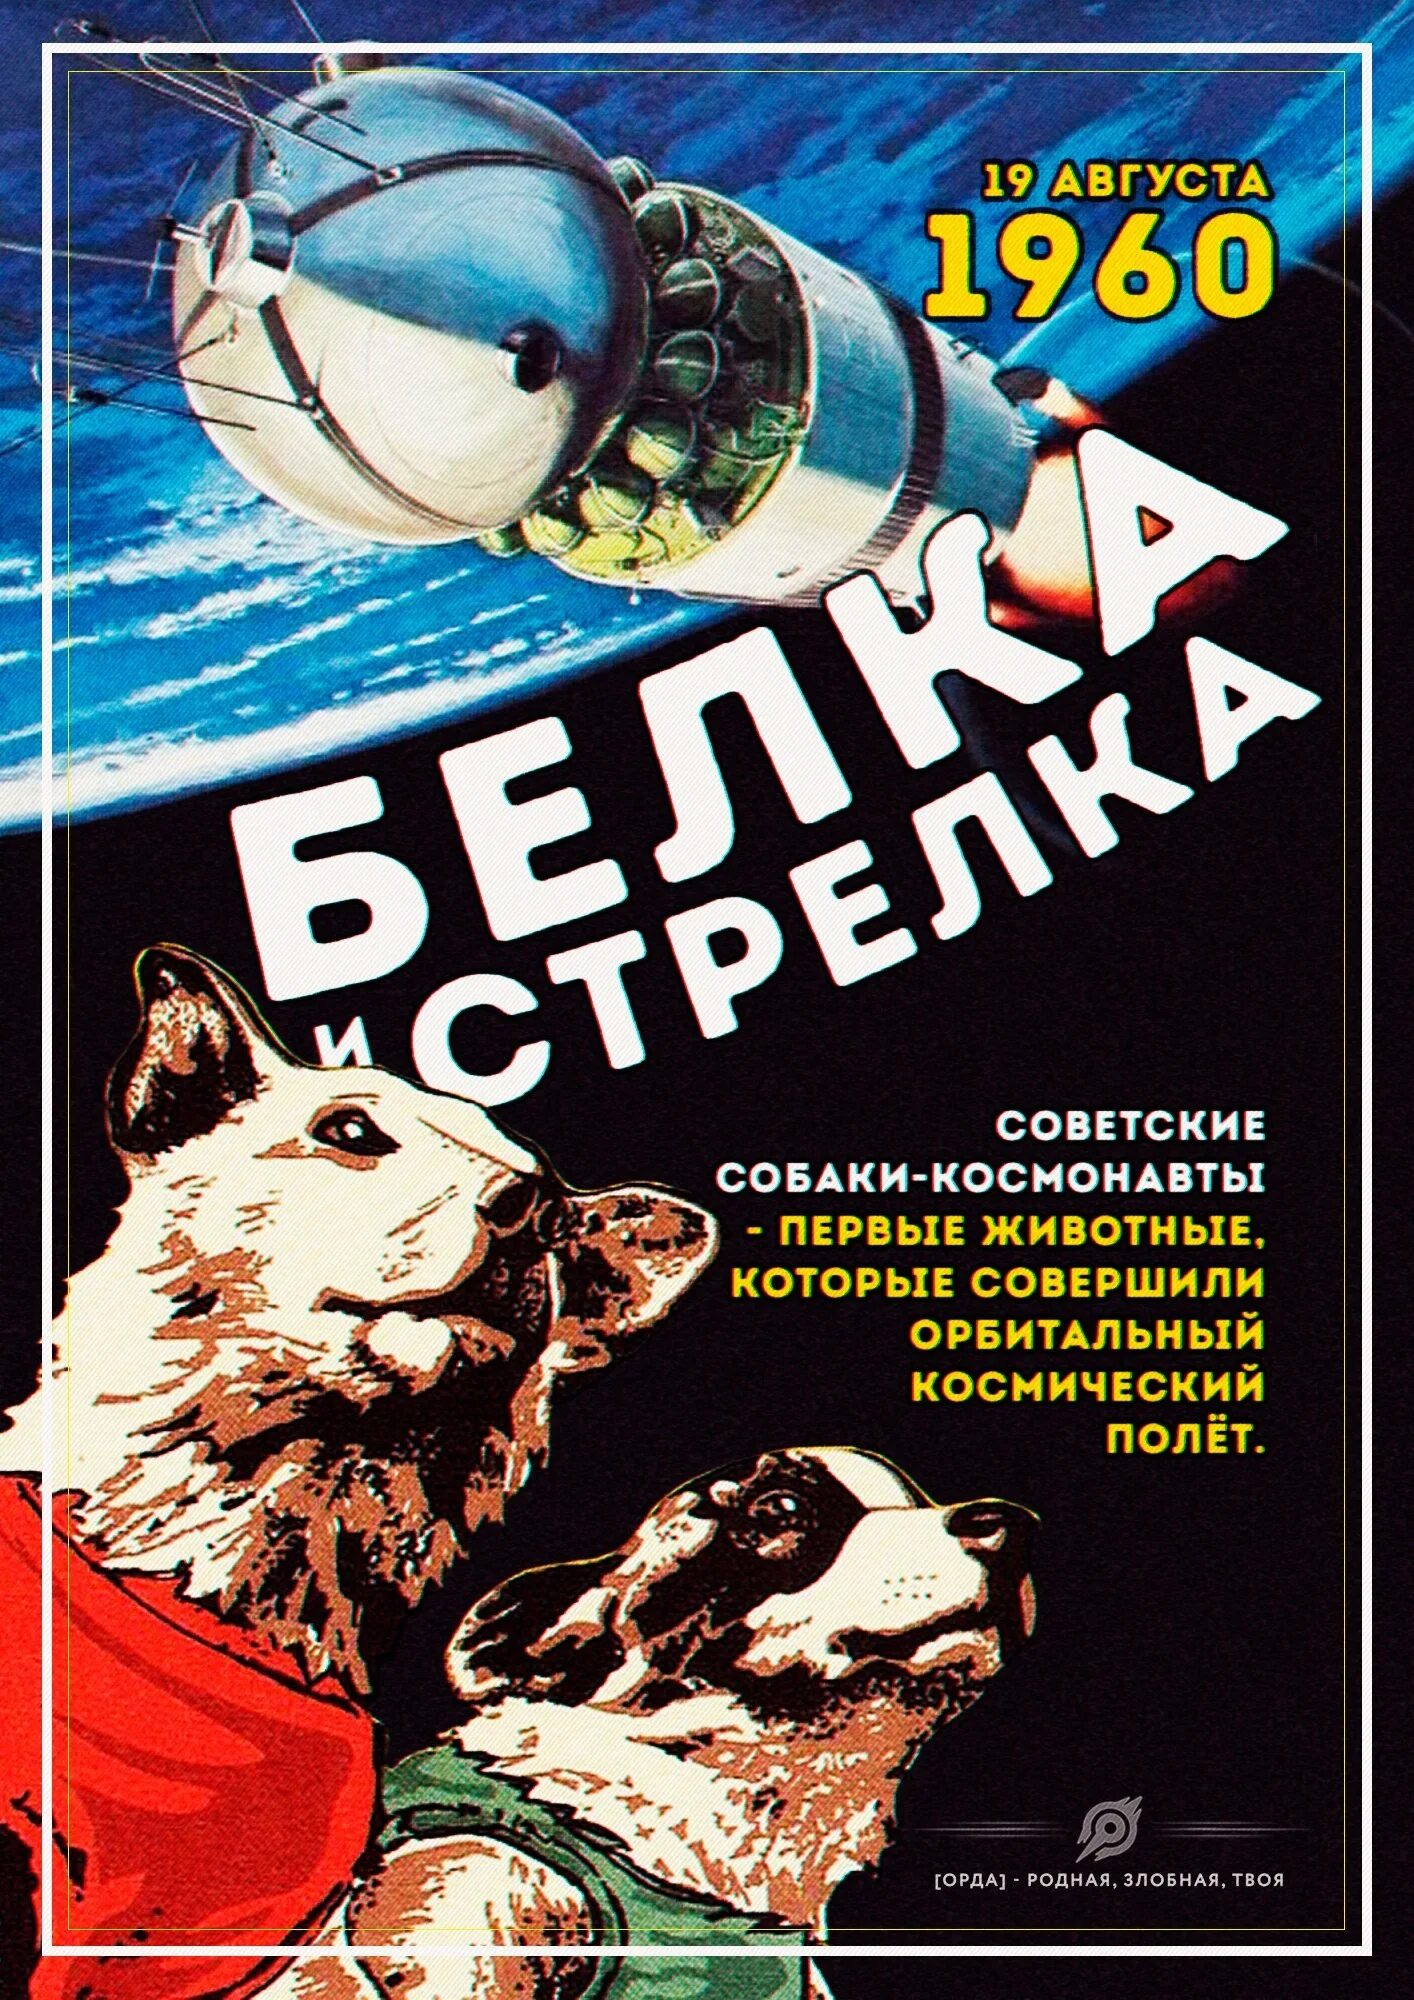 Белка и стрелка 19 августа 1960 года. Спутник 5 белка и стрелка. Собака кефир покорившая космос. Корм для собак белка и стрелка отзывы. 19 августа 1960